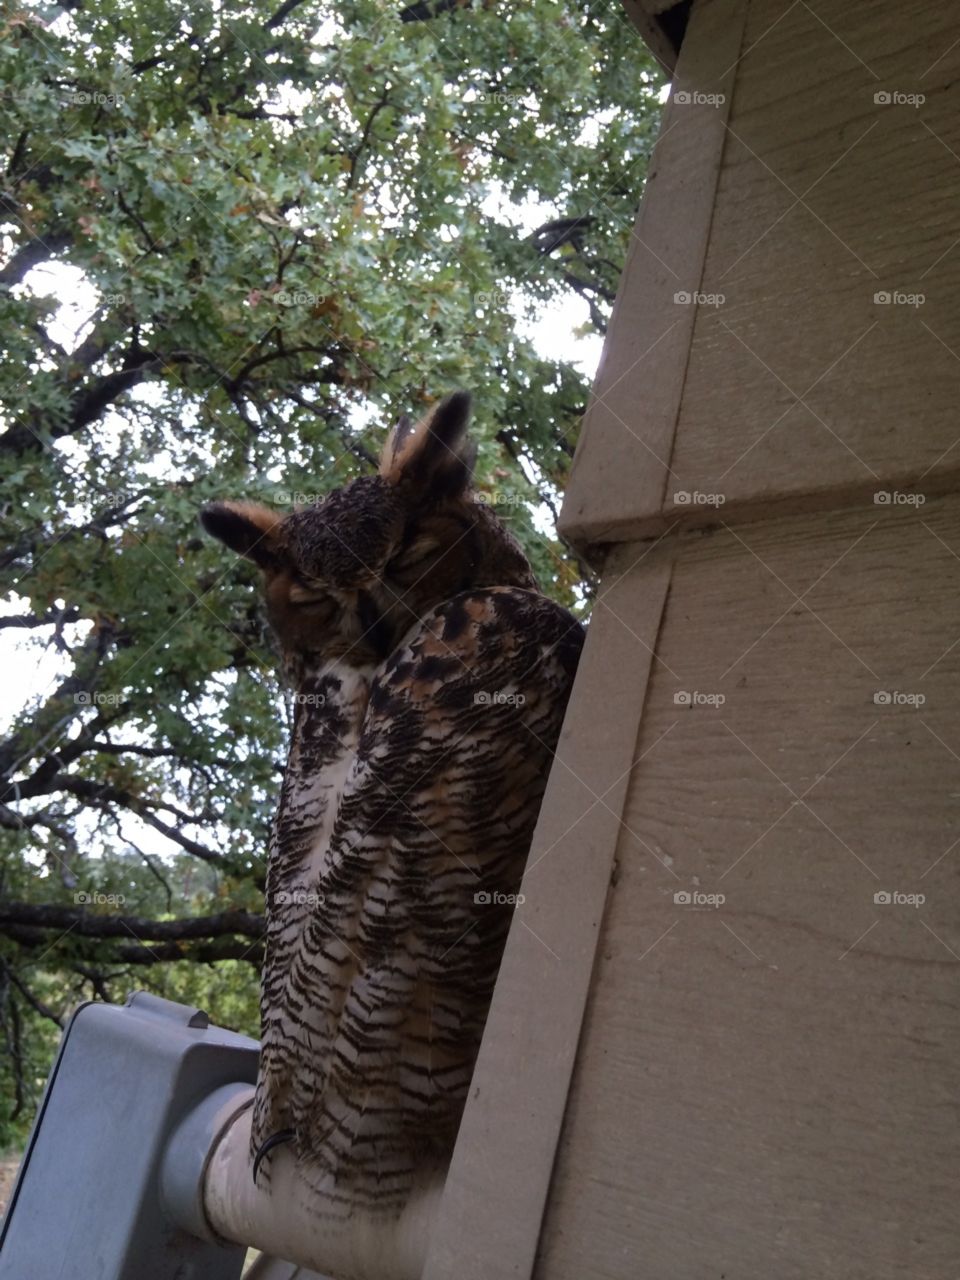 Owl on a ledge part four(?).